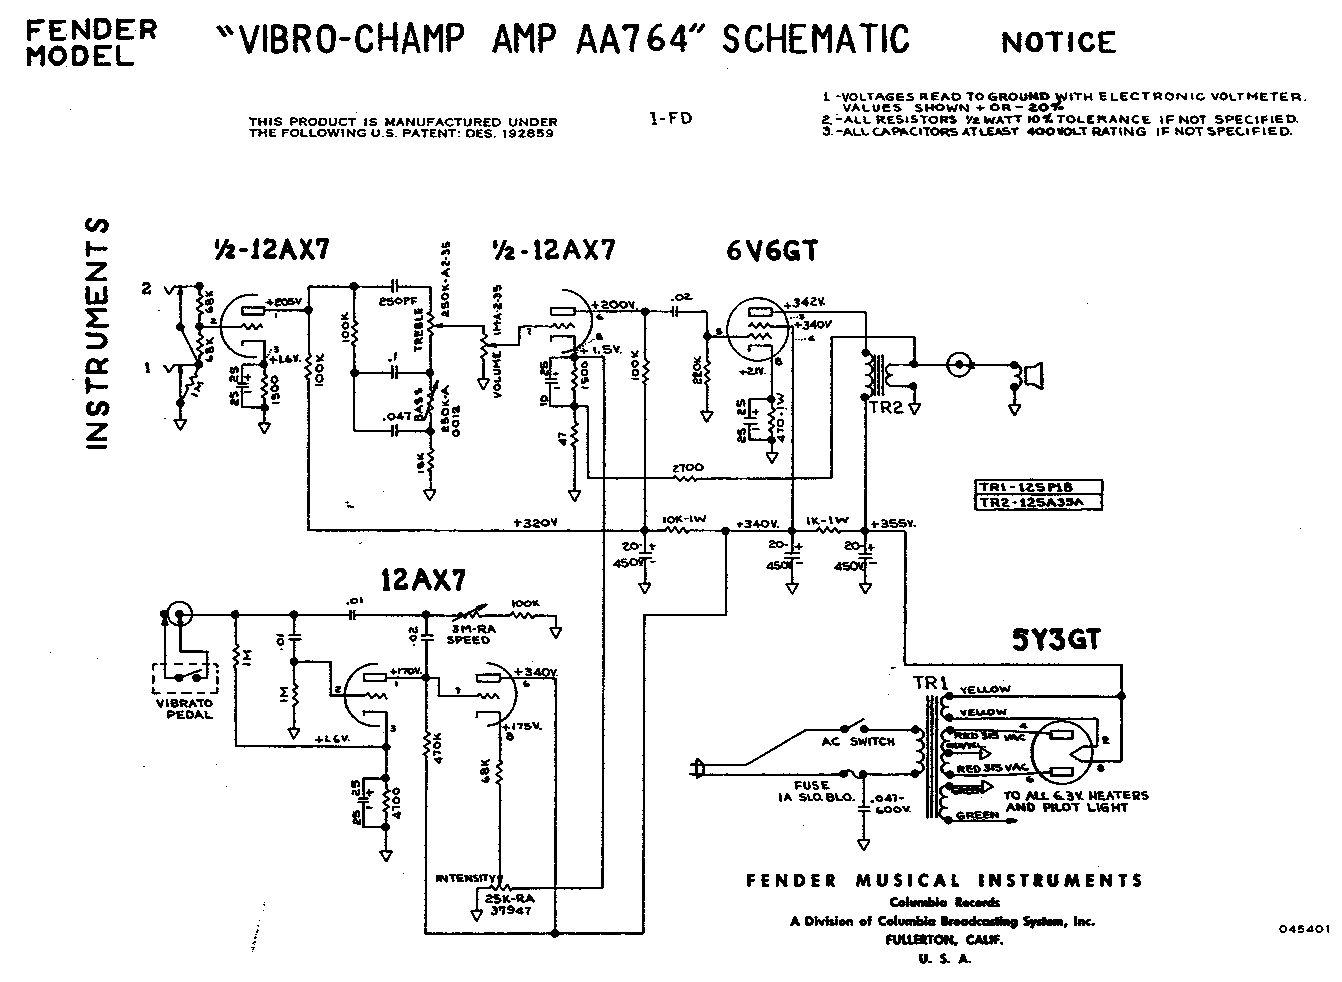 Схема Fender - Vibro-Champ Amp AA764